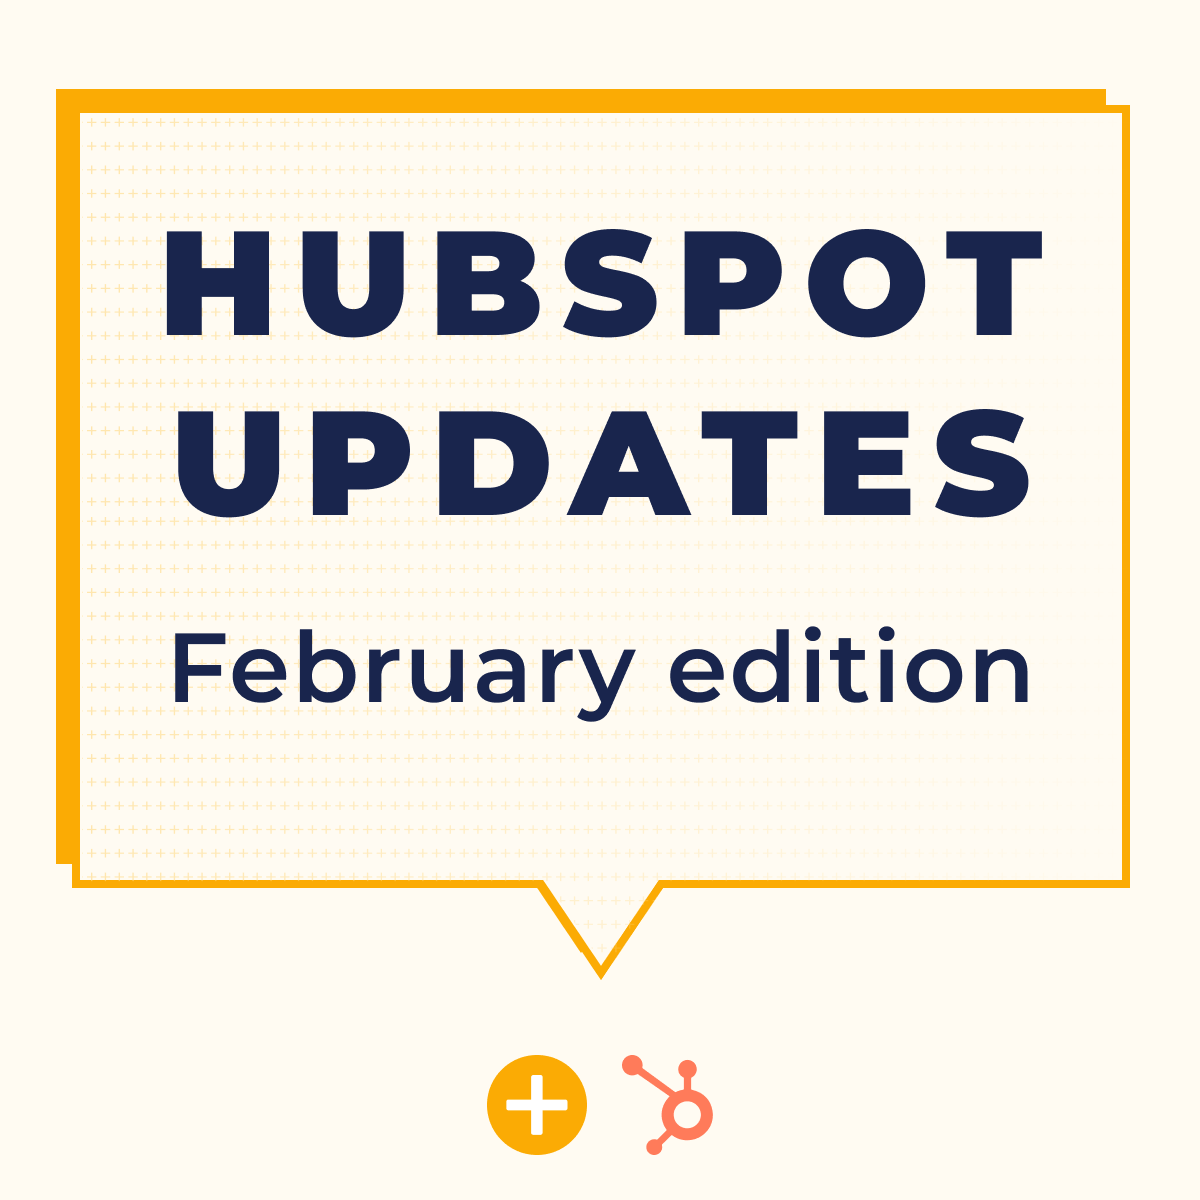 HUBSPOT UPDATES February